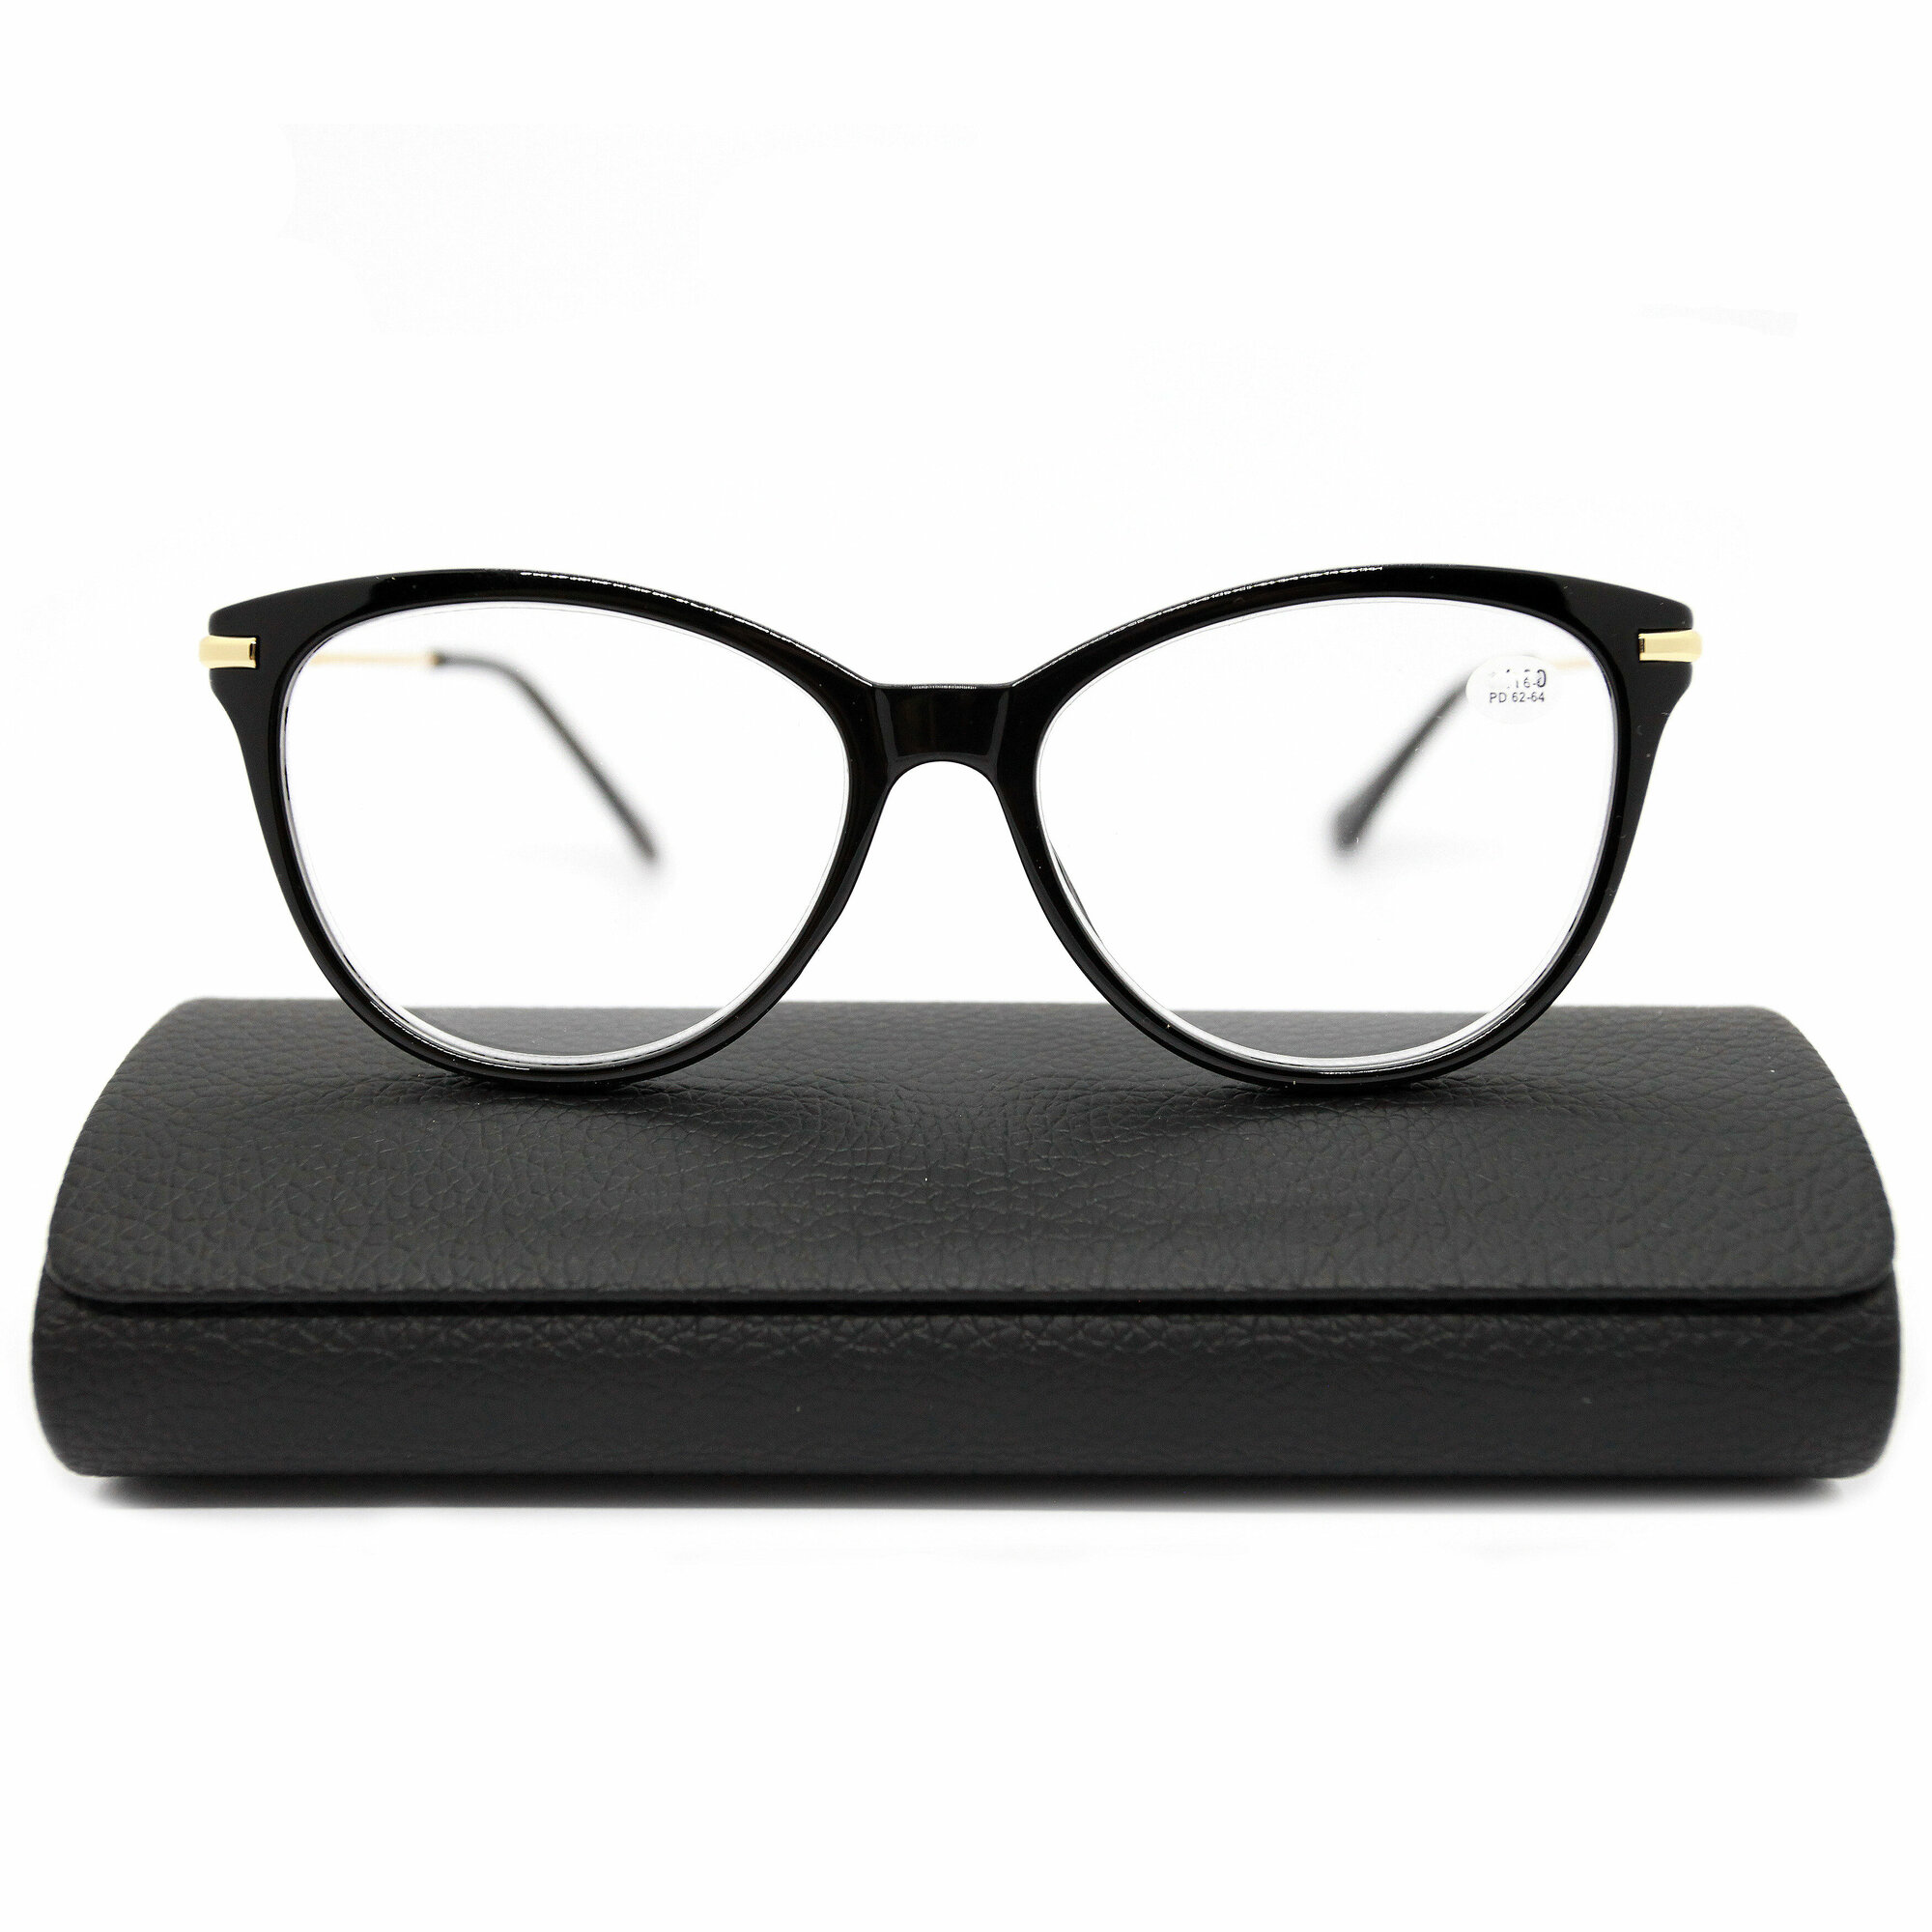 Модные женские готовые очки с металлической дужкой (+1.50) FABIA MONTI 0202, цвет черный, линза пластик, с футляром, РЦ 62-64